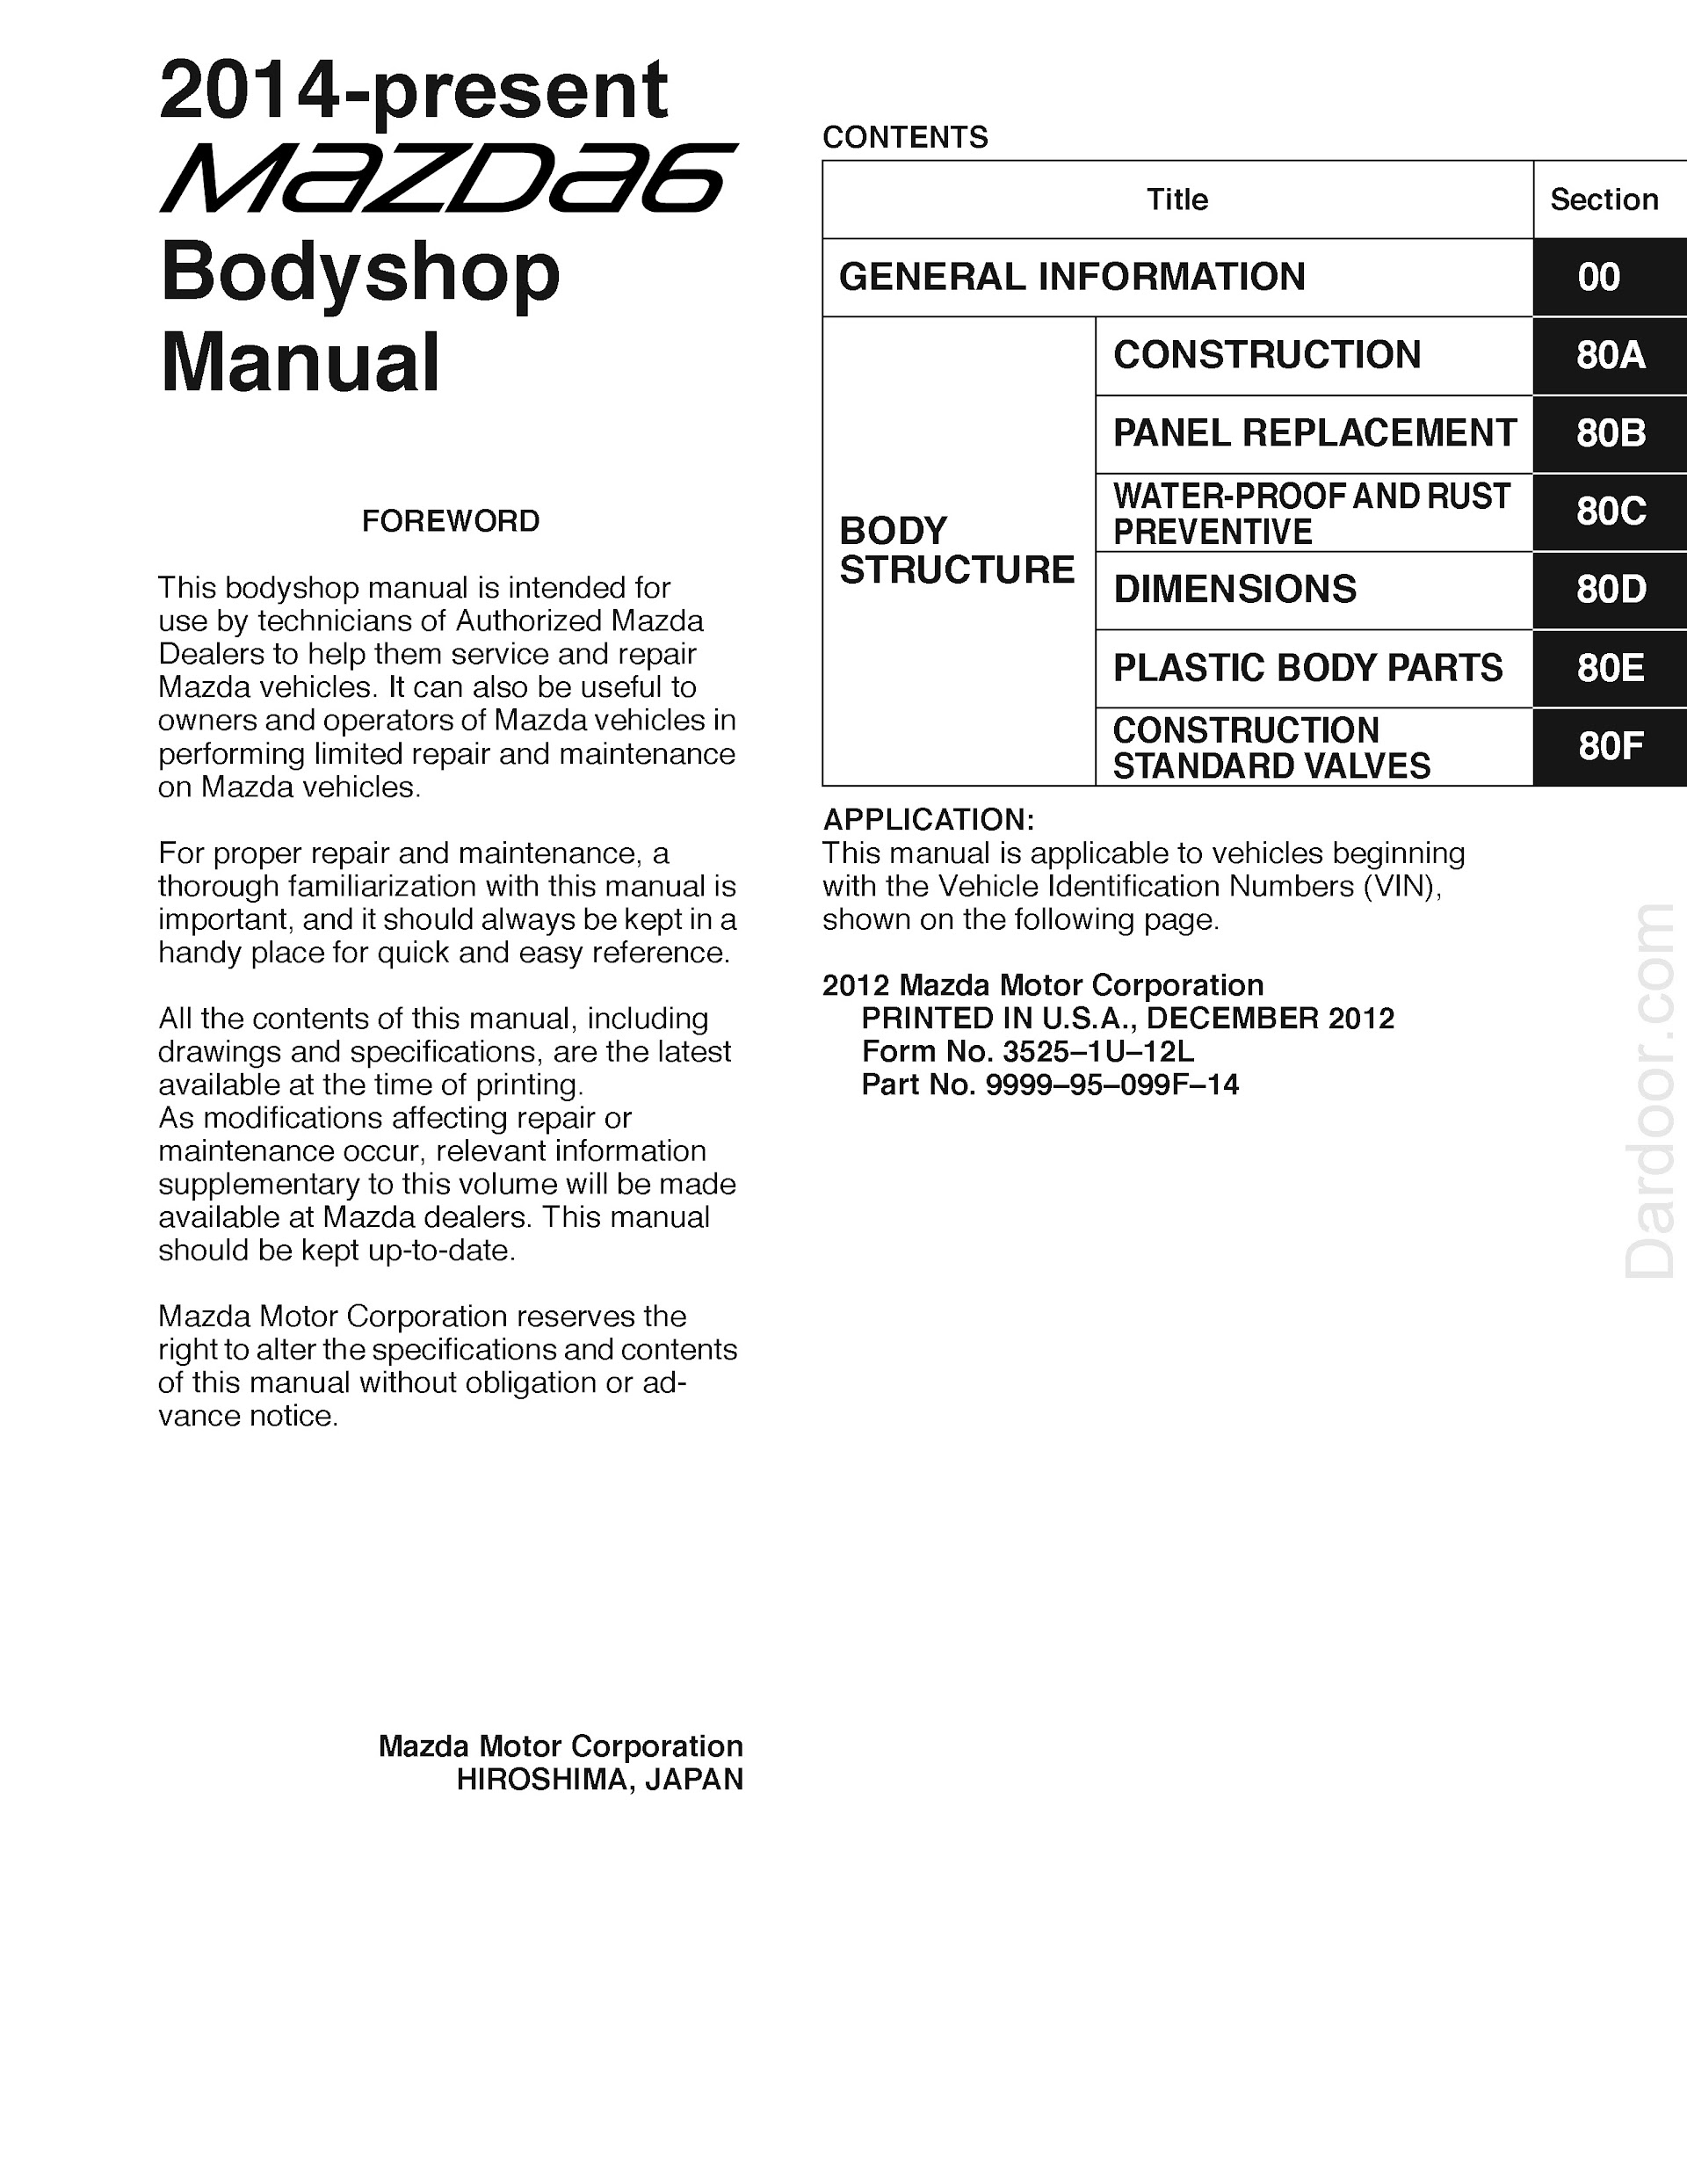 2018 mazda 6 repair manual